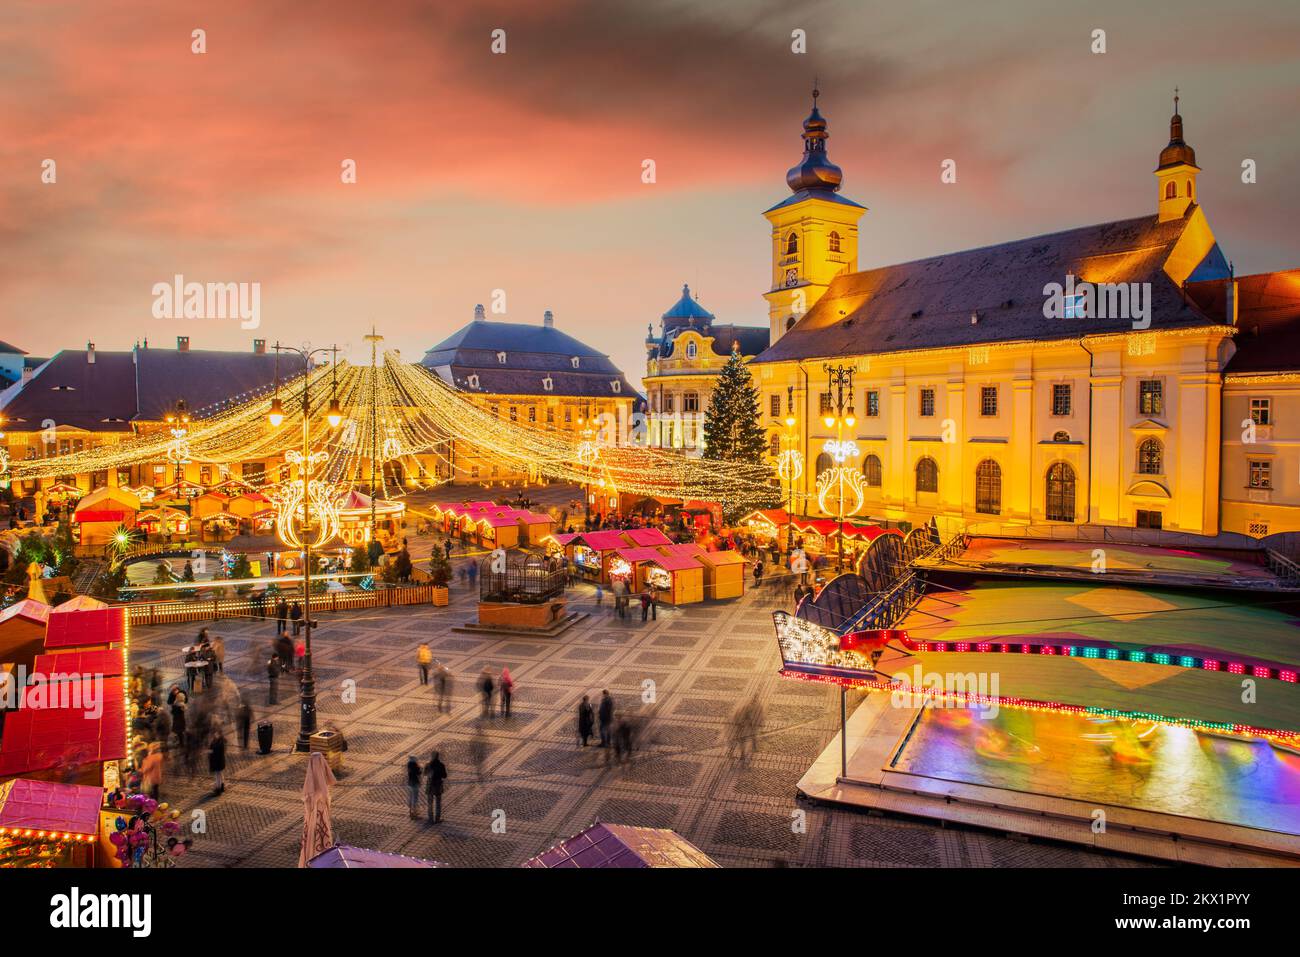 Sibiu, Rumänien - 2014. Dezember: Nachtbild mit Touristen auf dem Sibiu Weihnachtsmarkt auf dem großen Platz, mittelalterliche Innenstadt von Siebenbürgen. Stockfoto